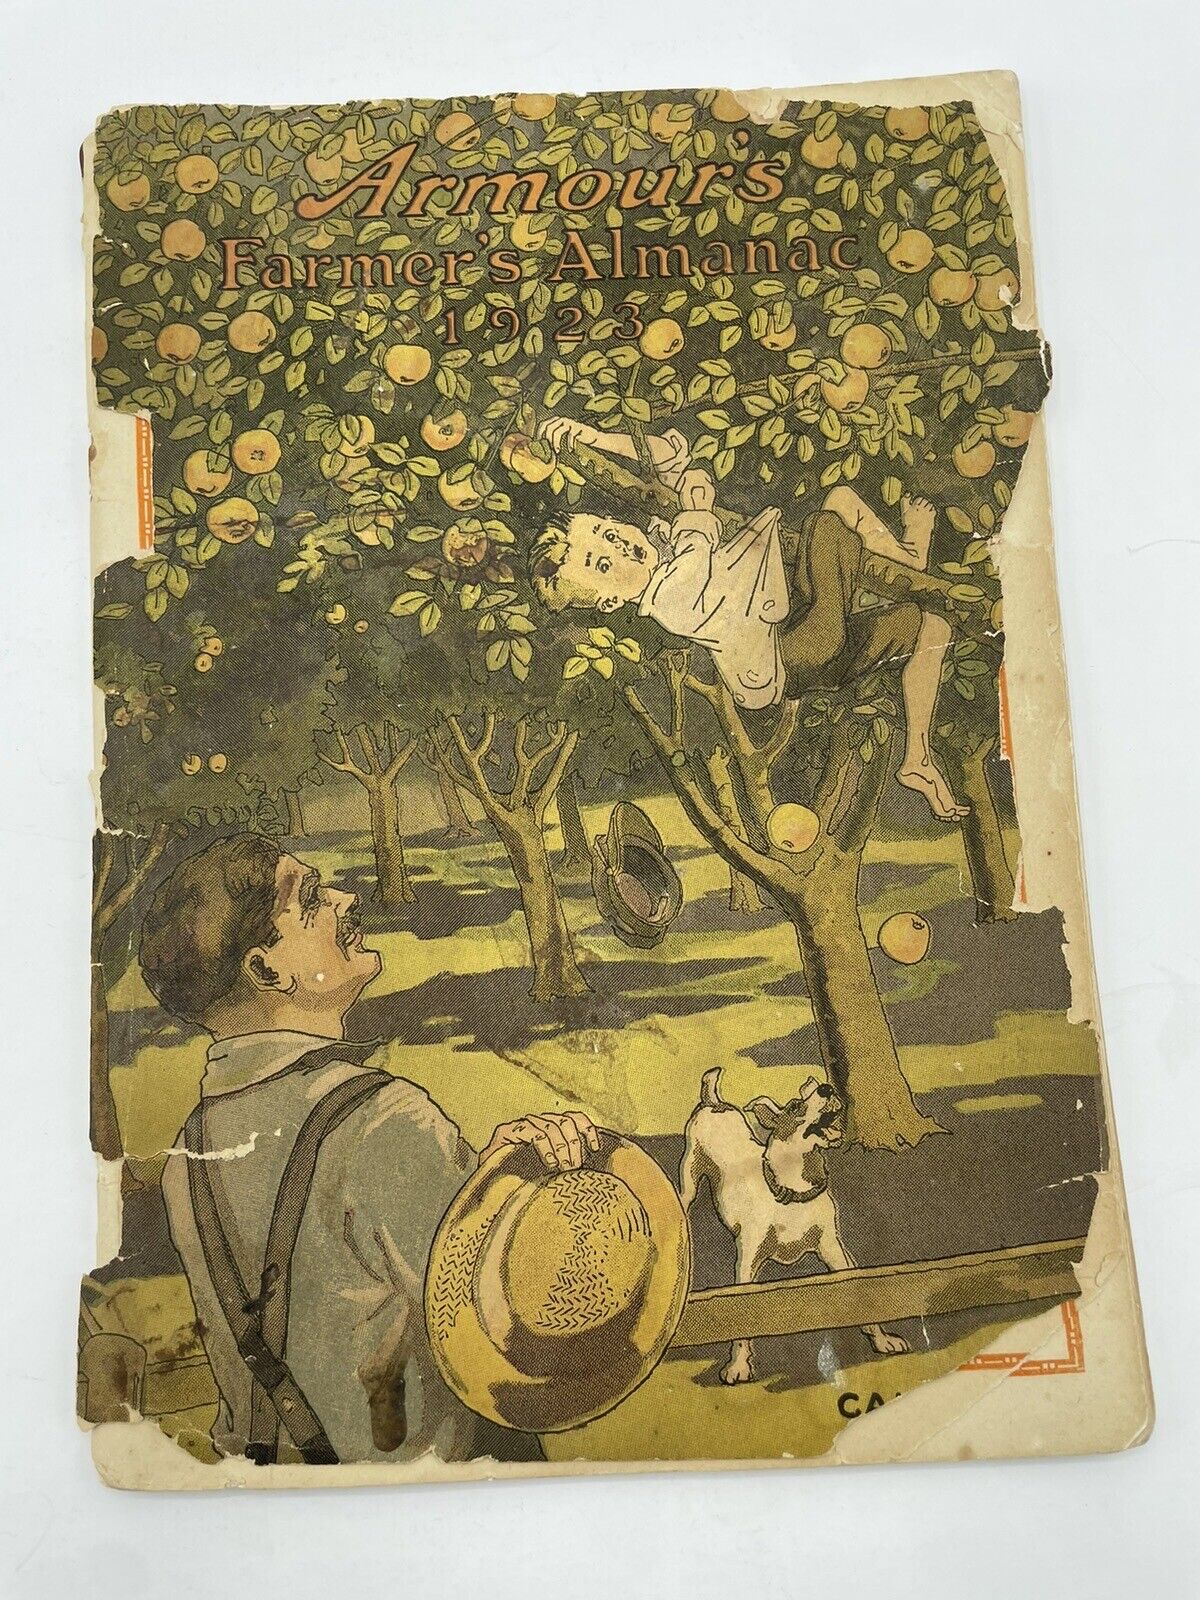 Armours 1923 Farmers Almanac A9